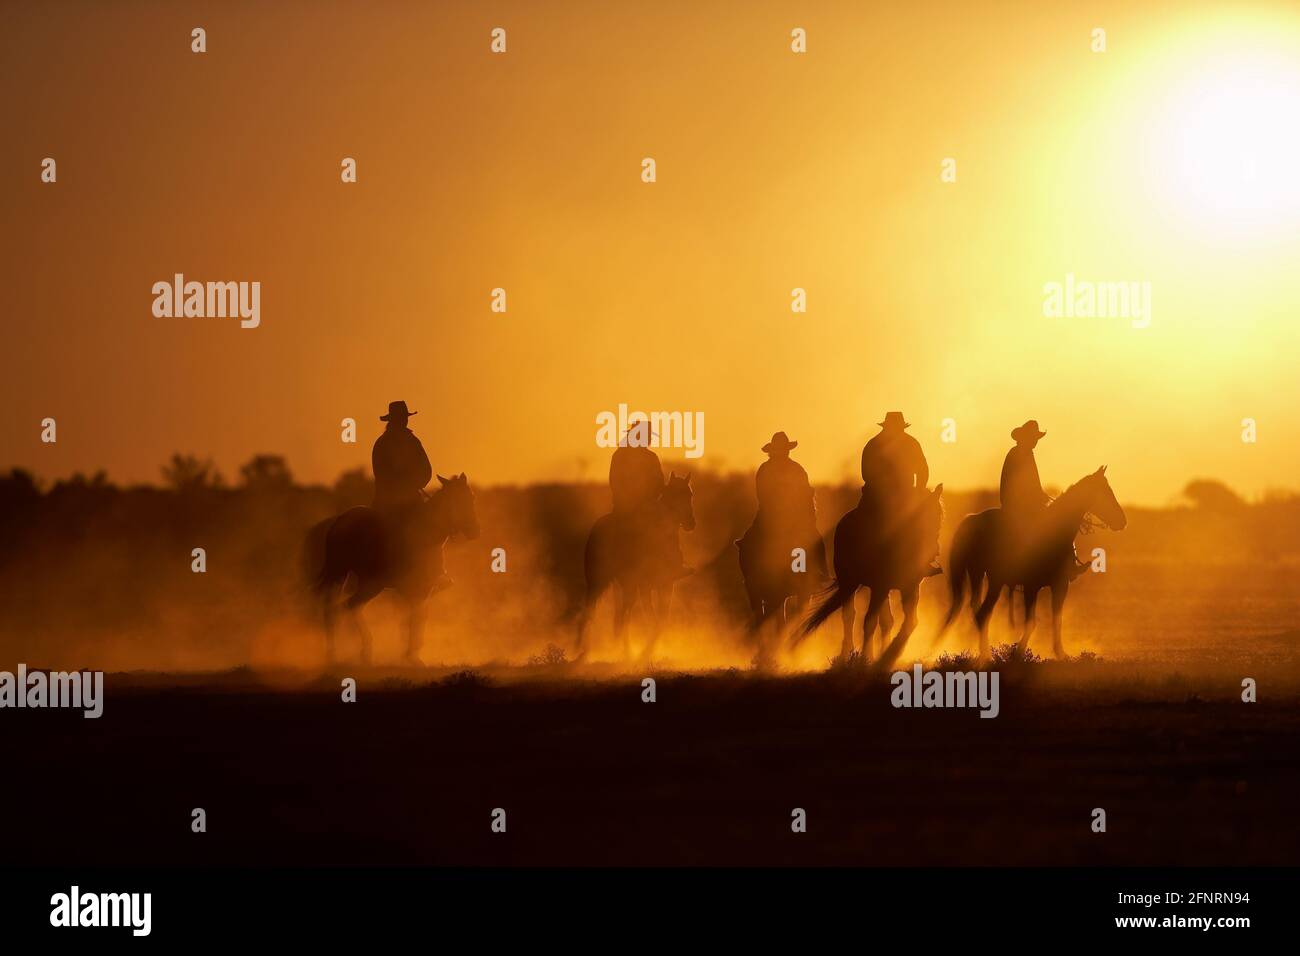 Drovers à cheval au coucher du soleil, Anna Creek Cattle Station. Australie méridionale Outback. Modèle 561-566 Banque D'Images